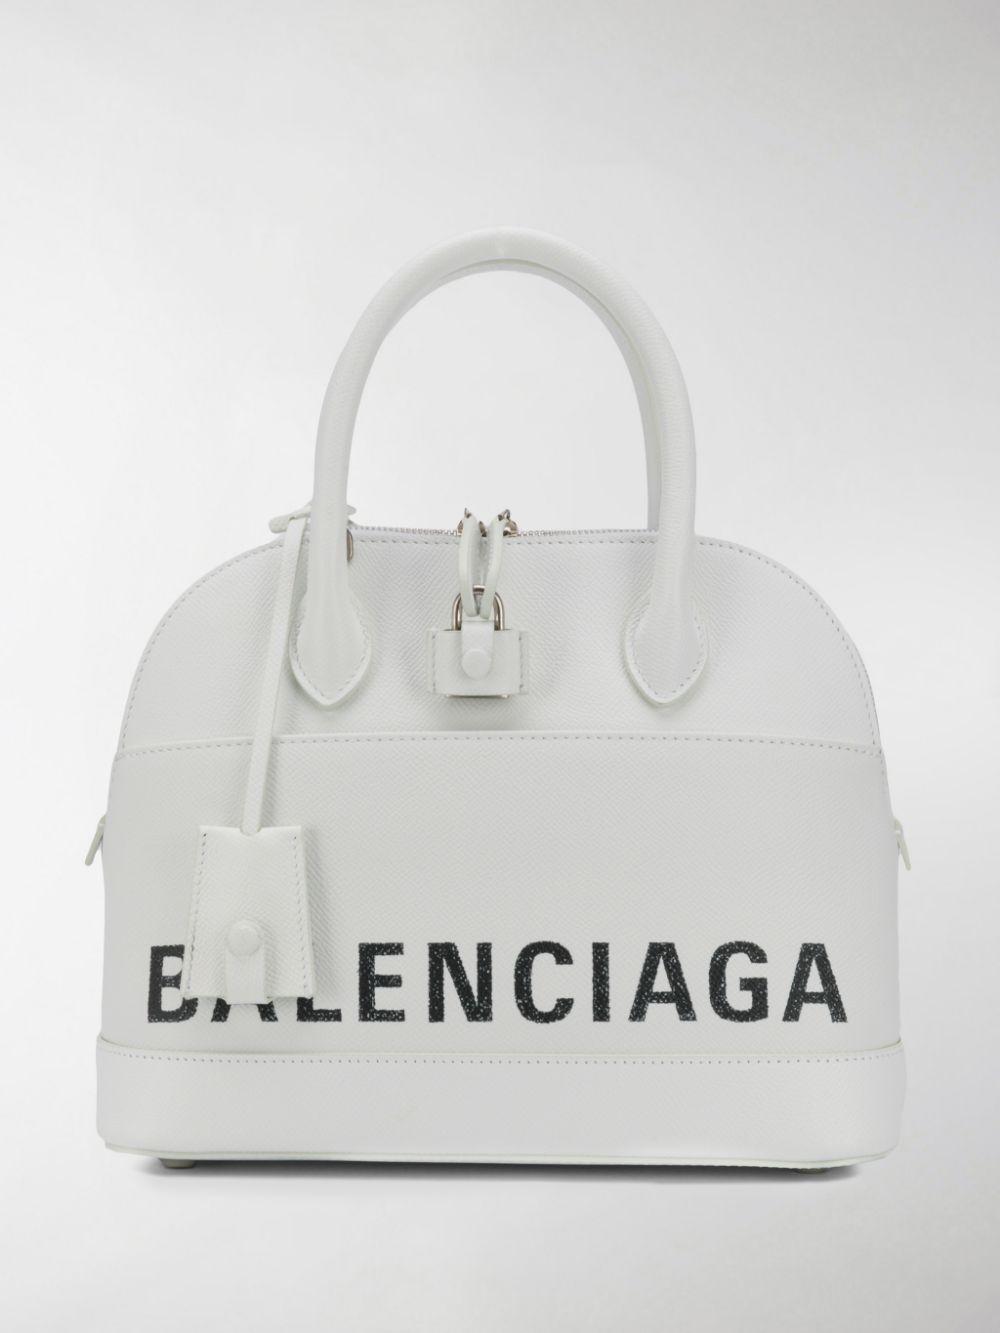 Balenciaga Ville Small Tote Bag in White - Lyst